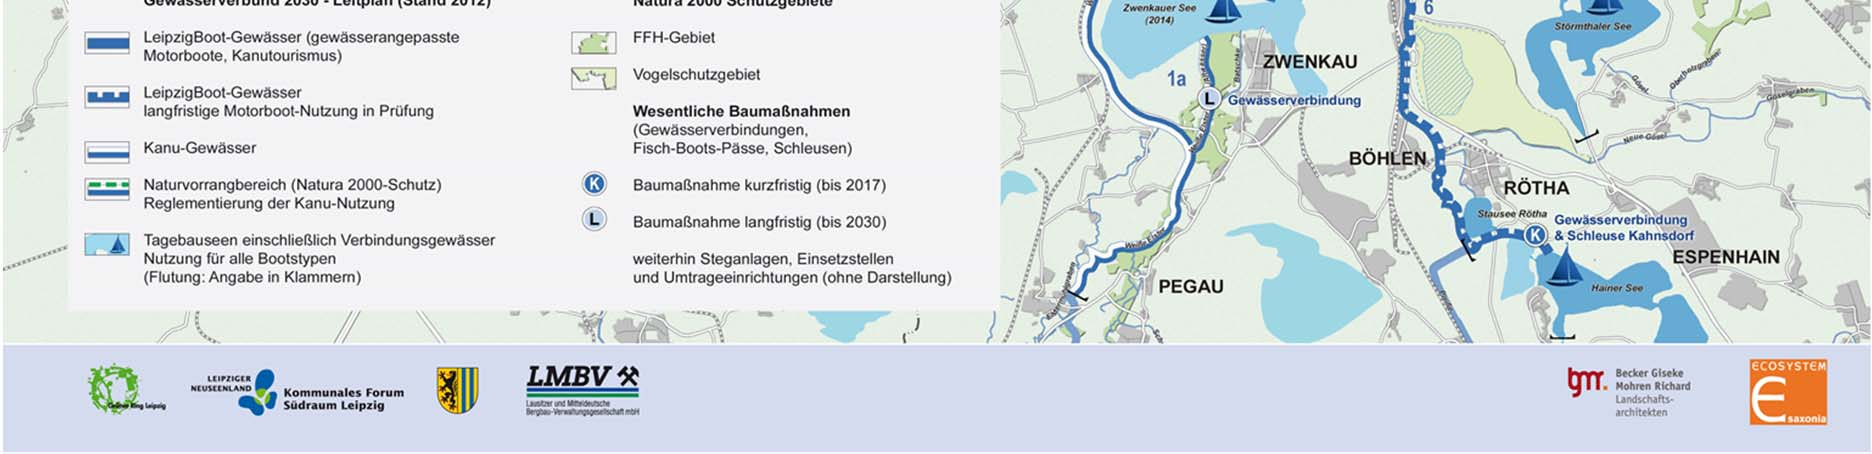 Häfen im Leipziger Neuseenland (Stand 2012) Häfen mit überwiegend touristischer und nicht